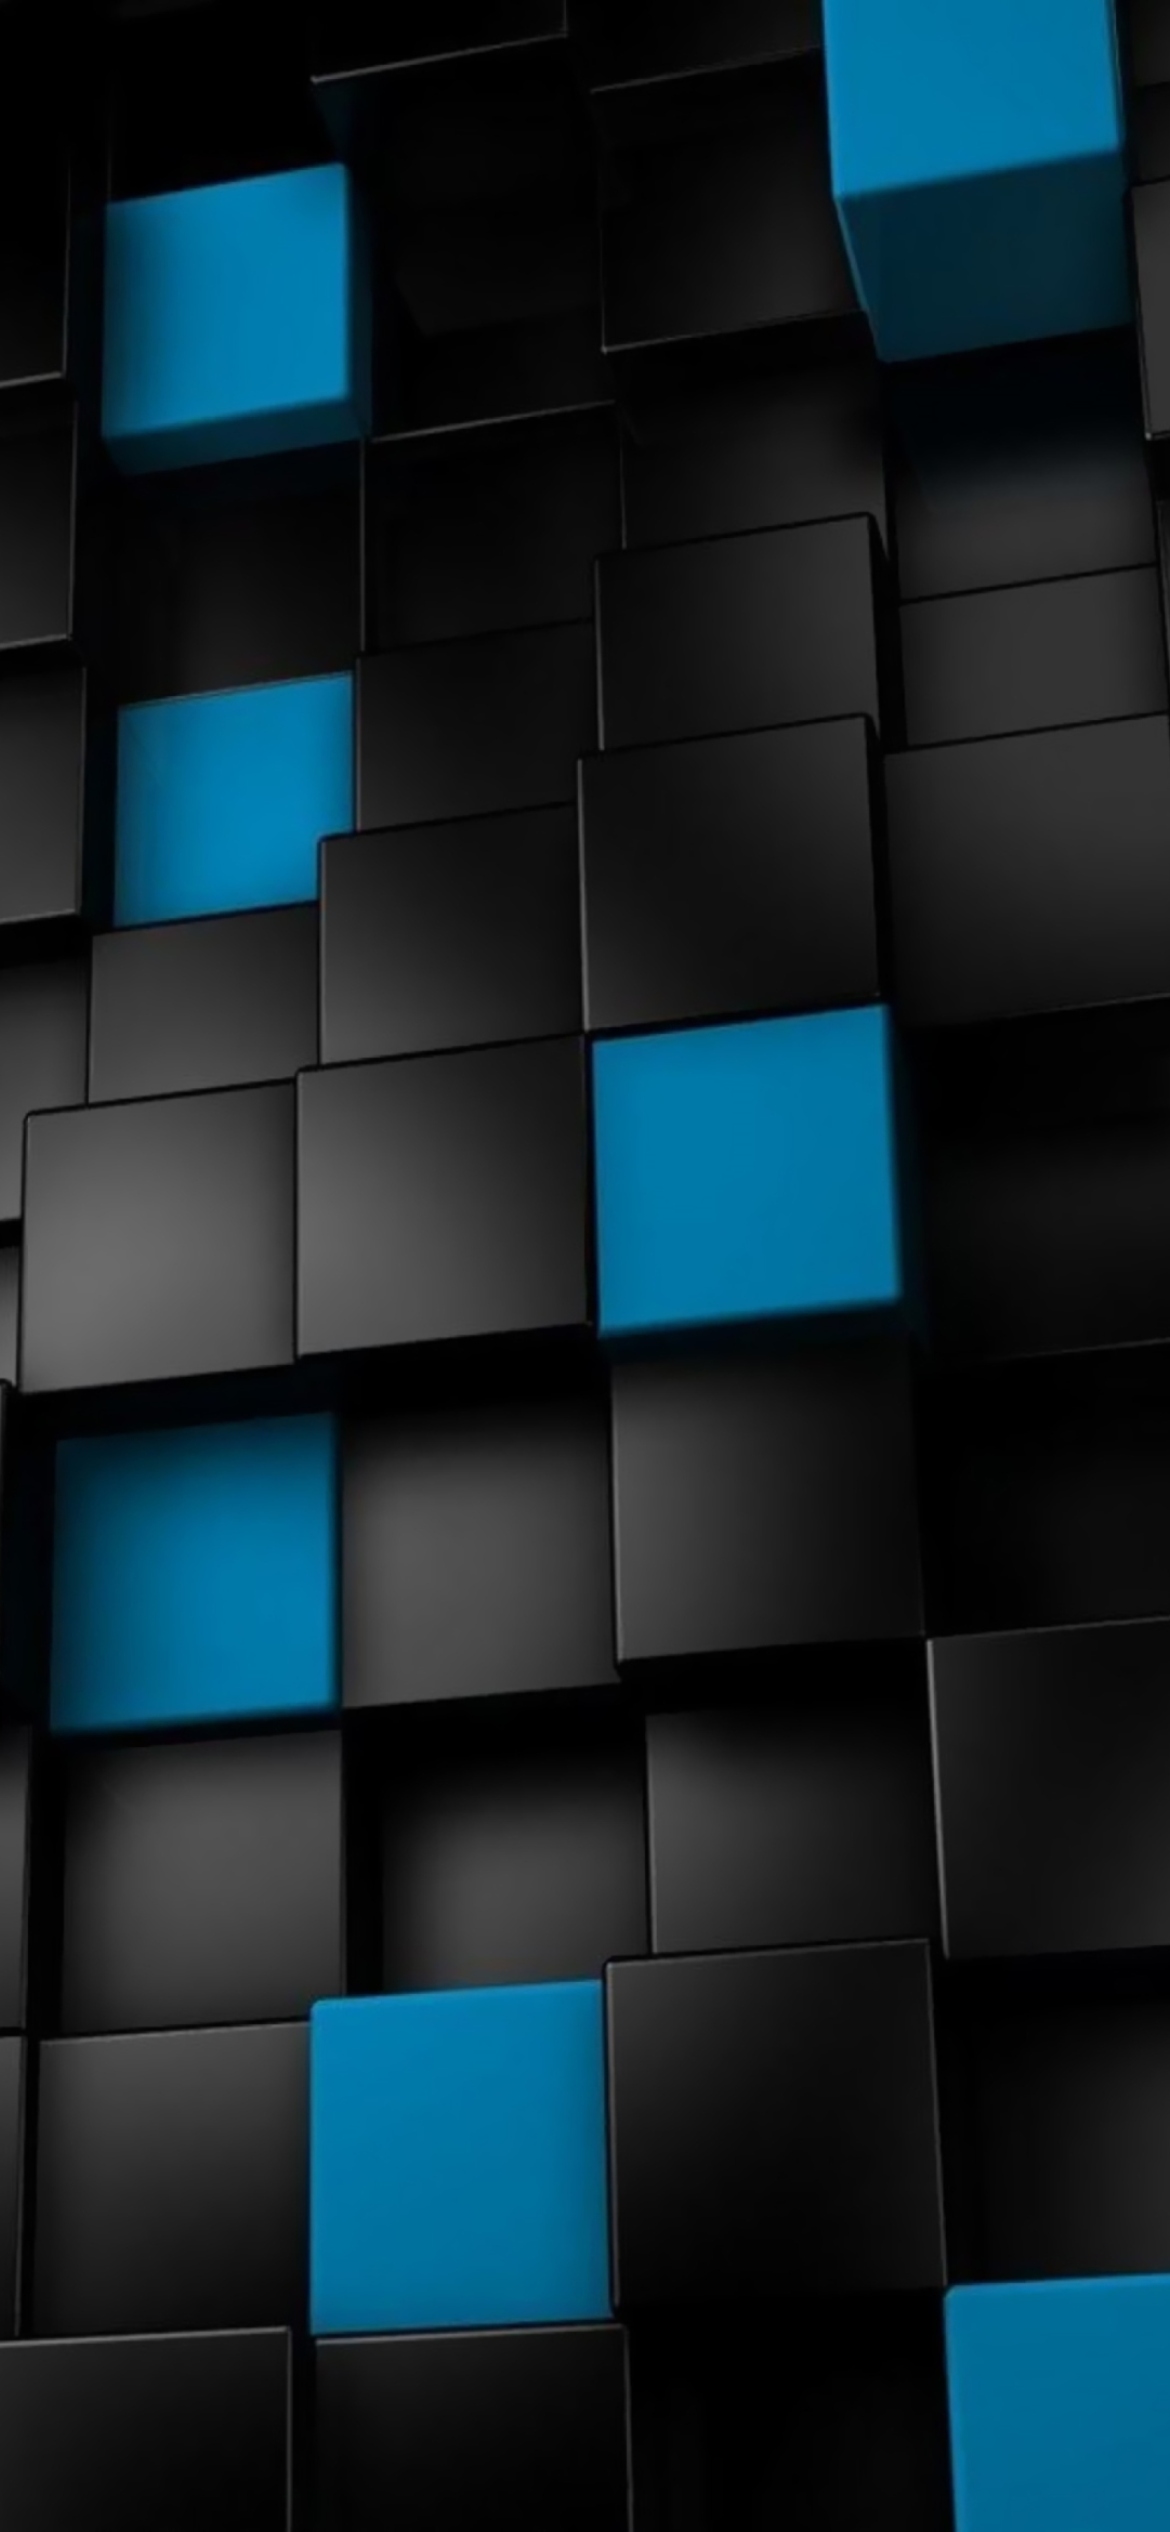 Das Cube Abstract Wallpaper 1170x2532